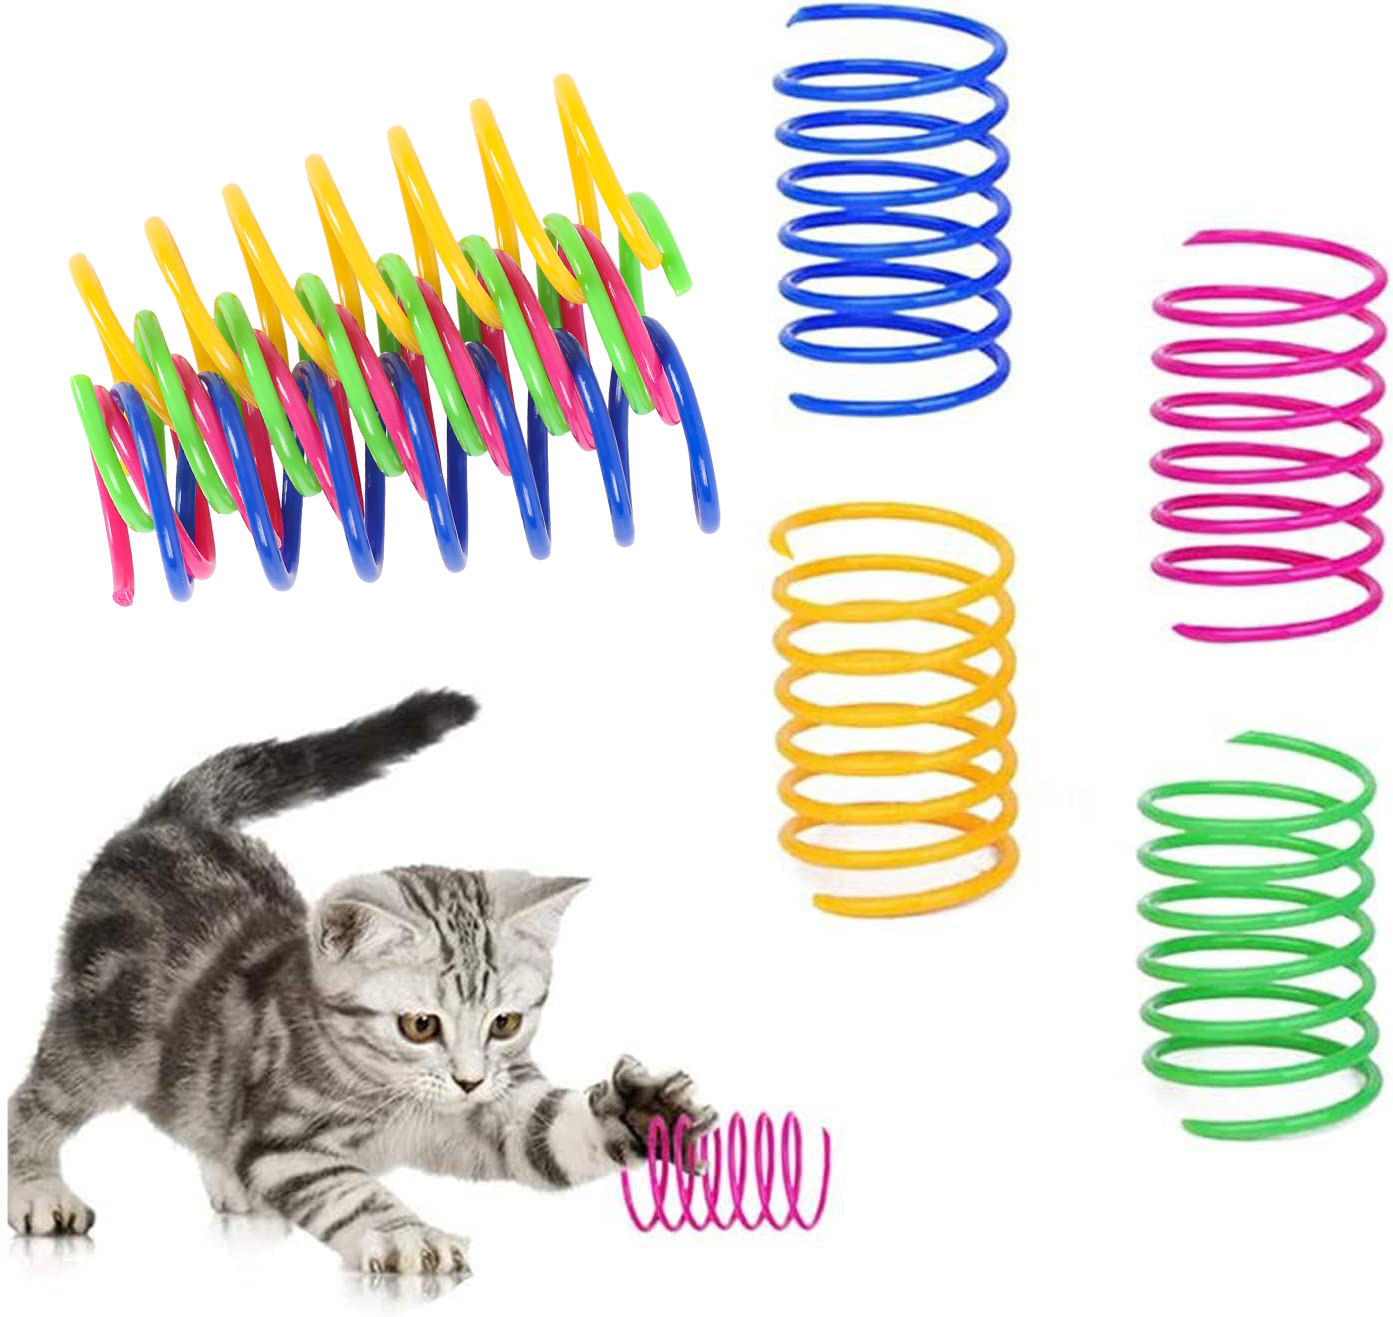 4 упаковки прочных пластиковых интерактивных игрушек для кошек со спиральной пружиной